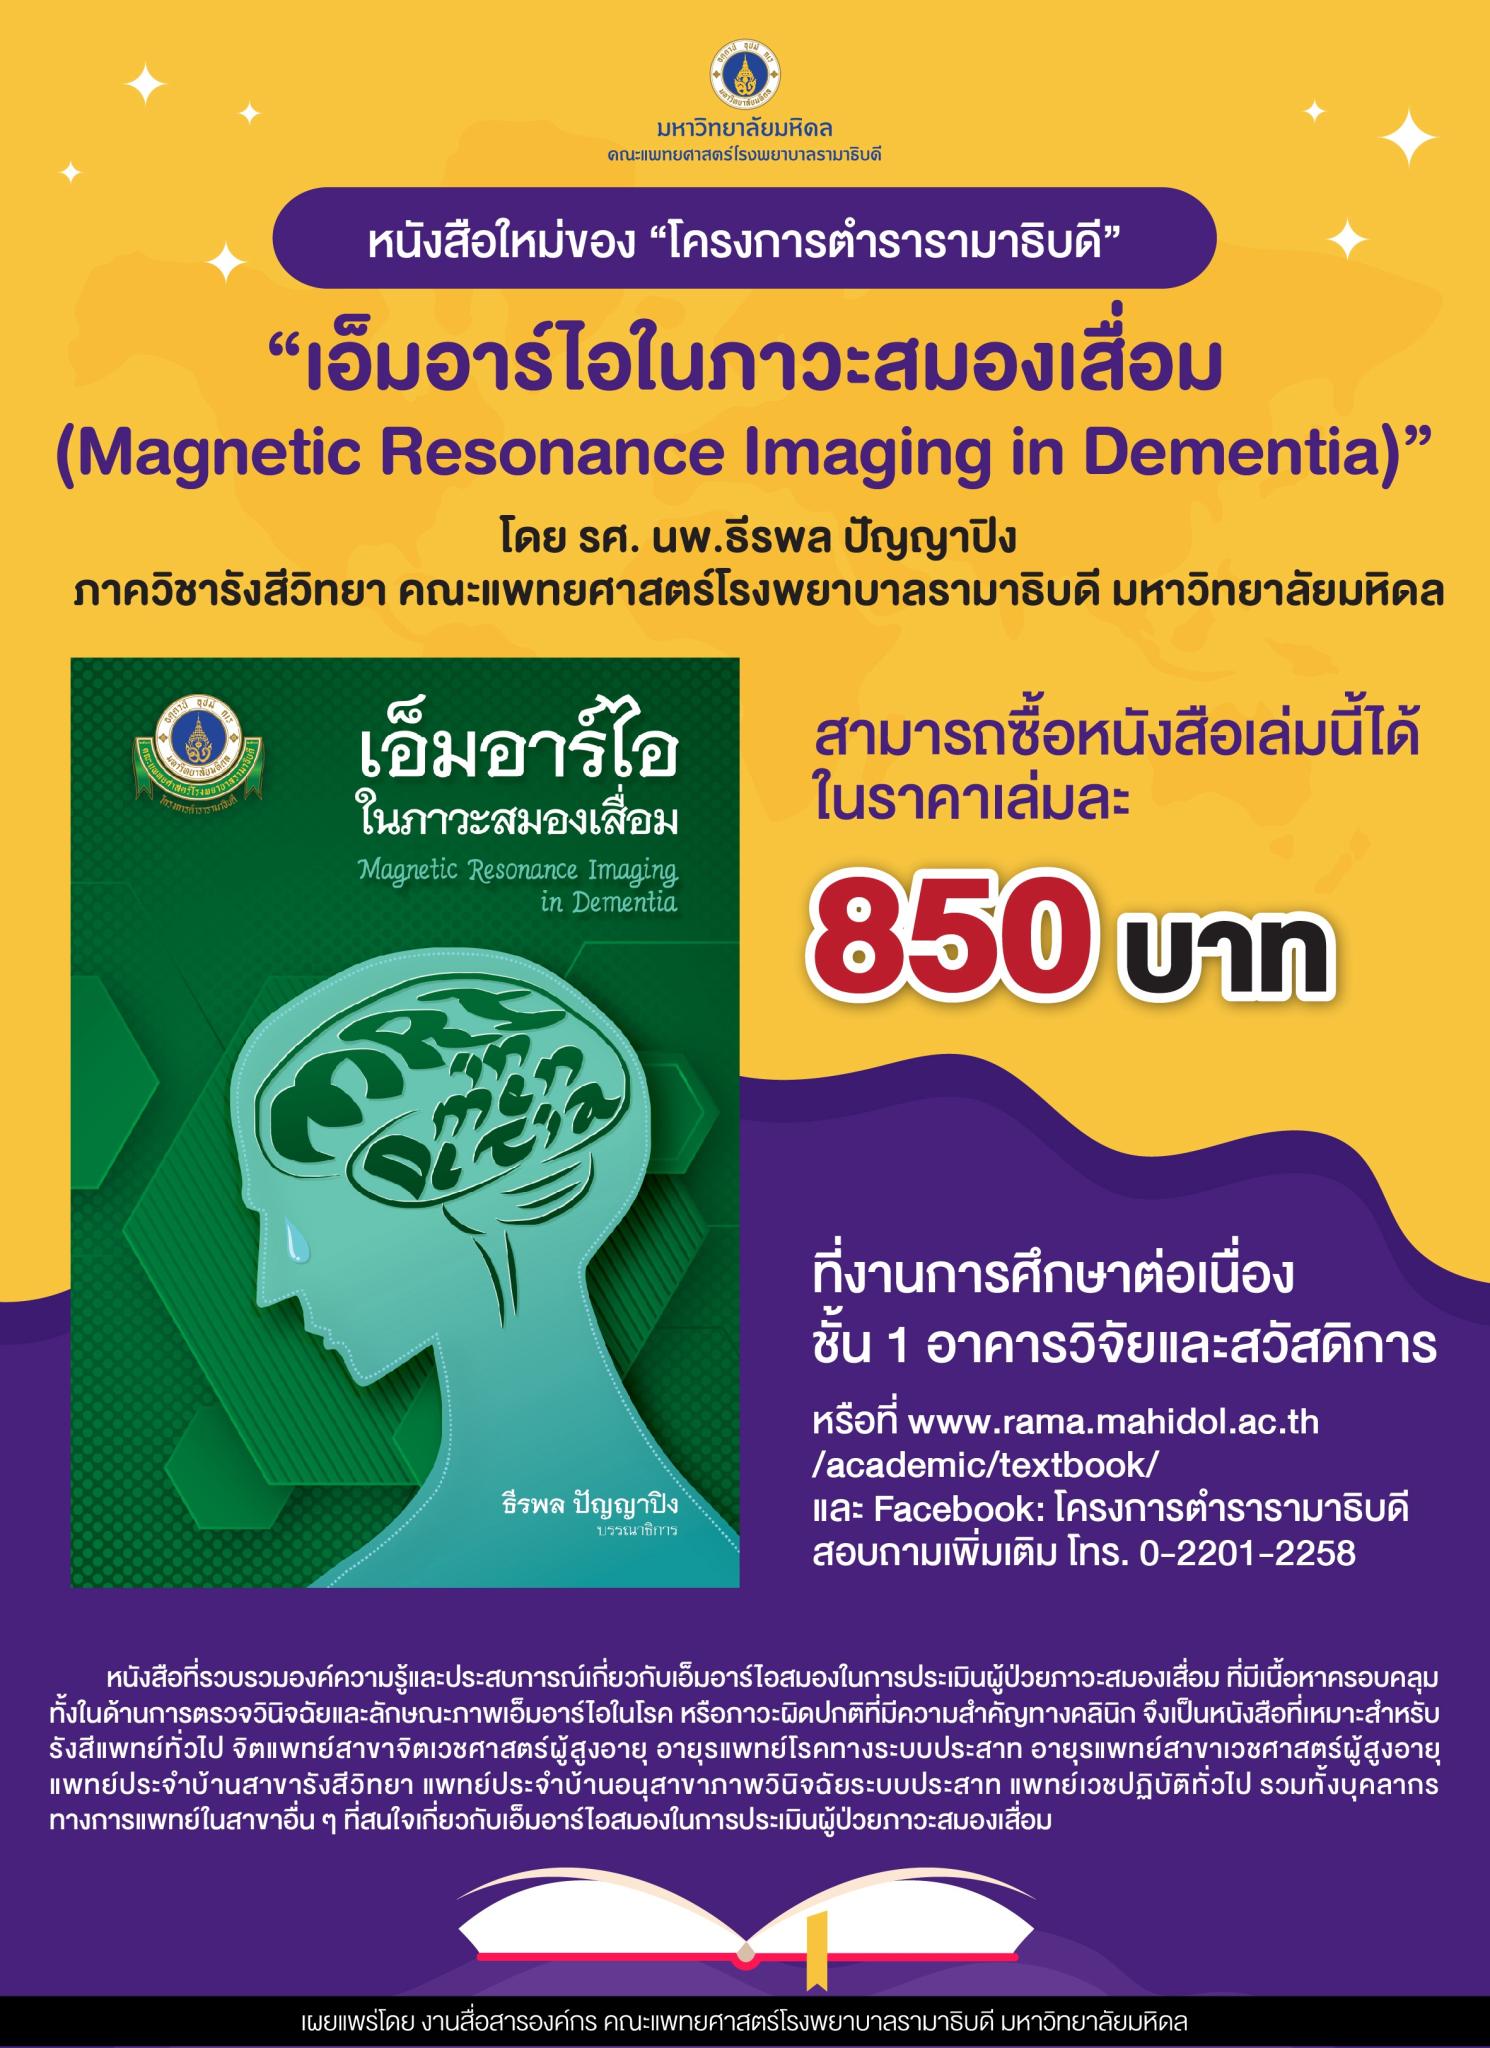 หนังสือใหม่ของ “โครงการตำรารามาธิบดี” “เอ็มอาร์ไอในภาวะสมองเสื่อม (Magentic Resonance Imaging in Dementia)”